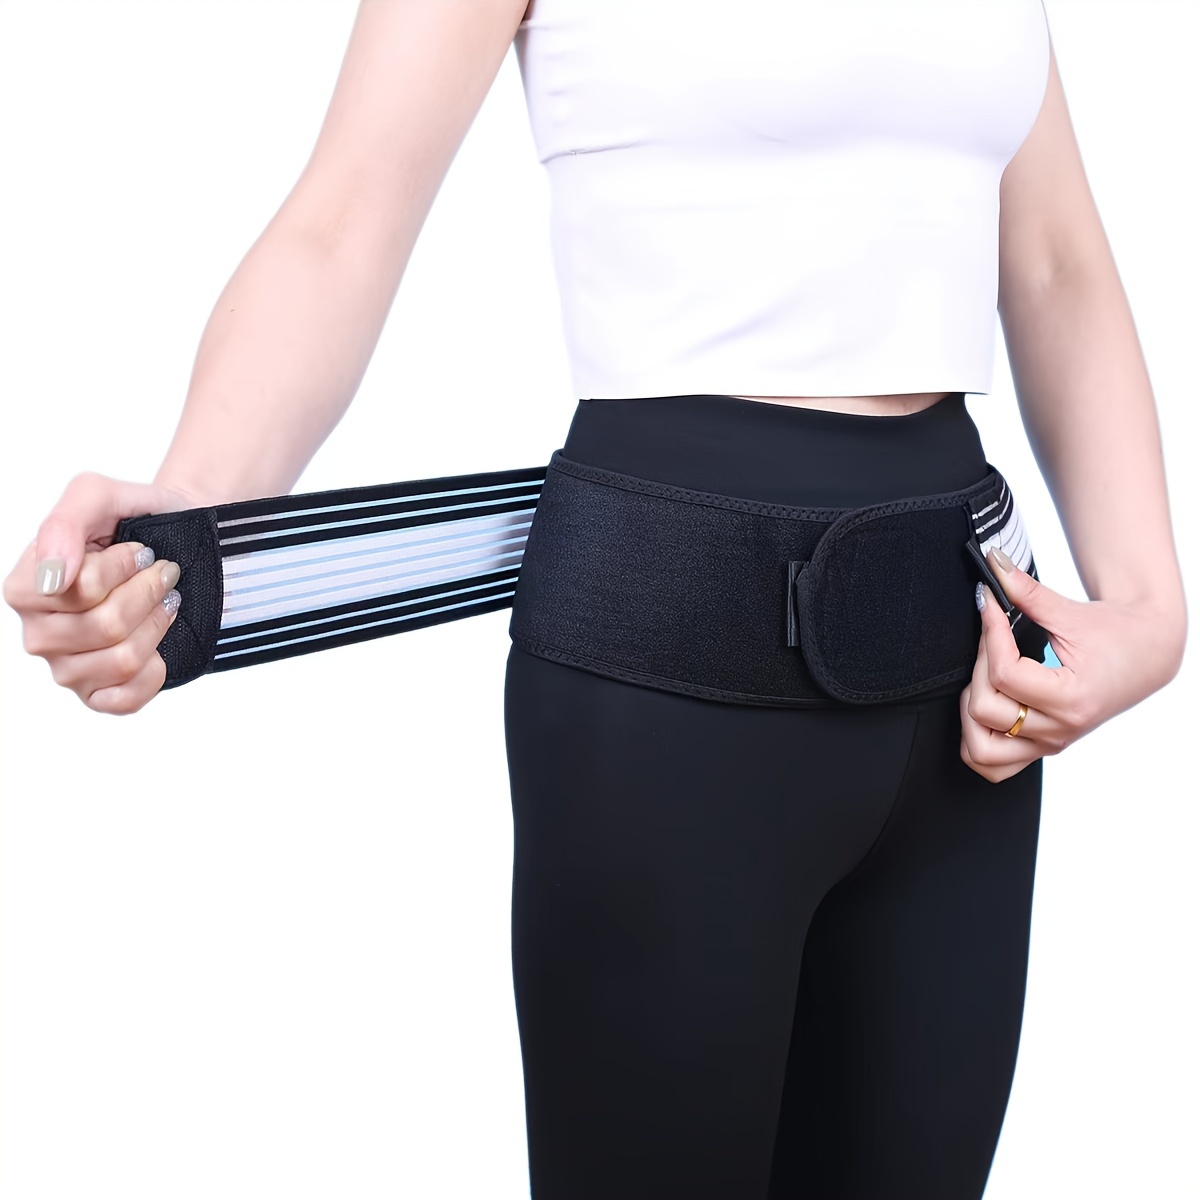 Women's Pelvic Belt, Waist Support Belt